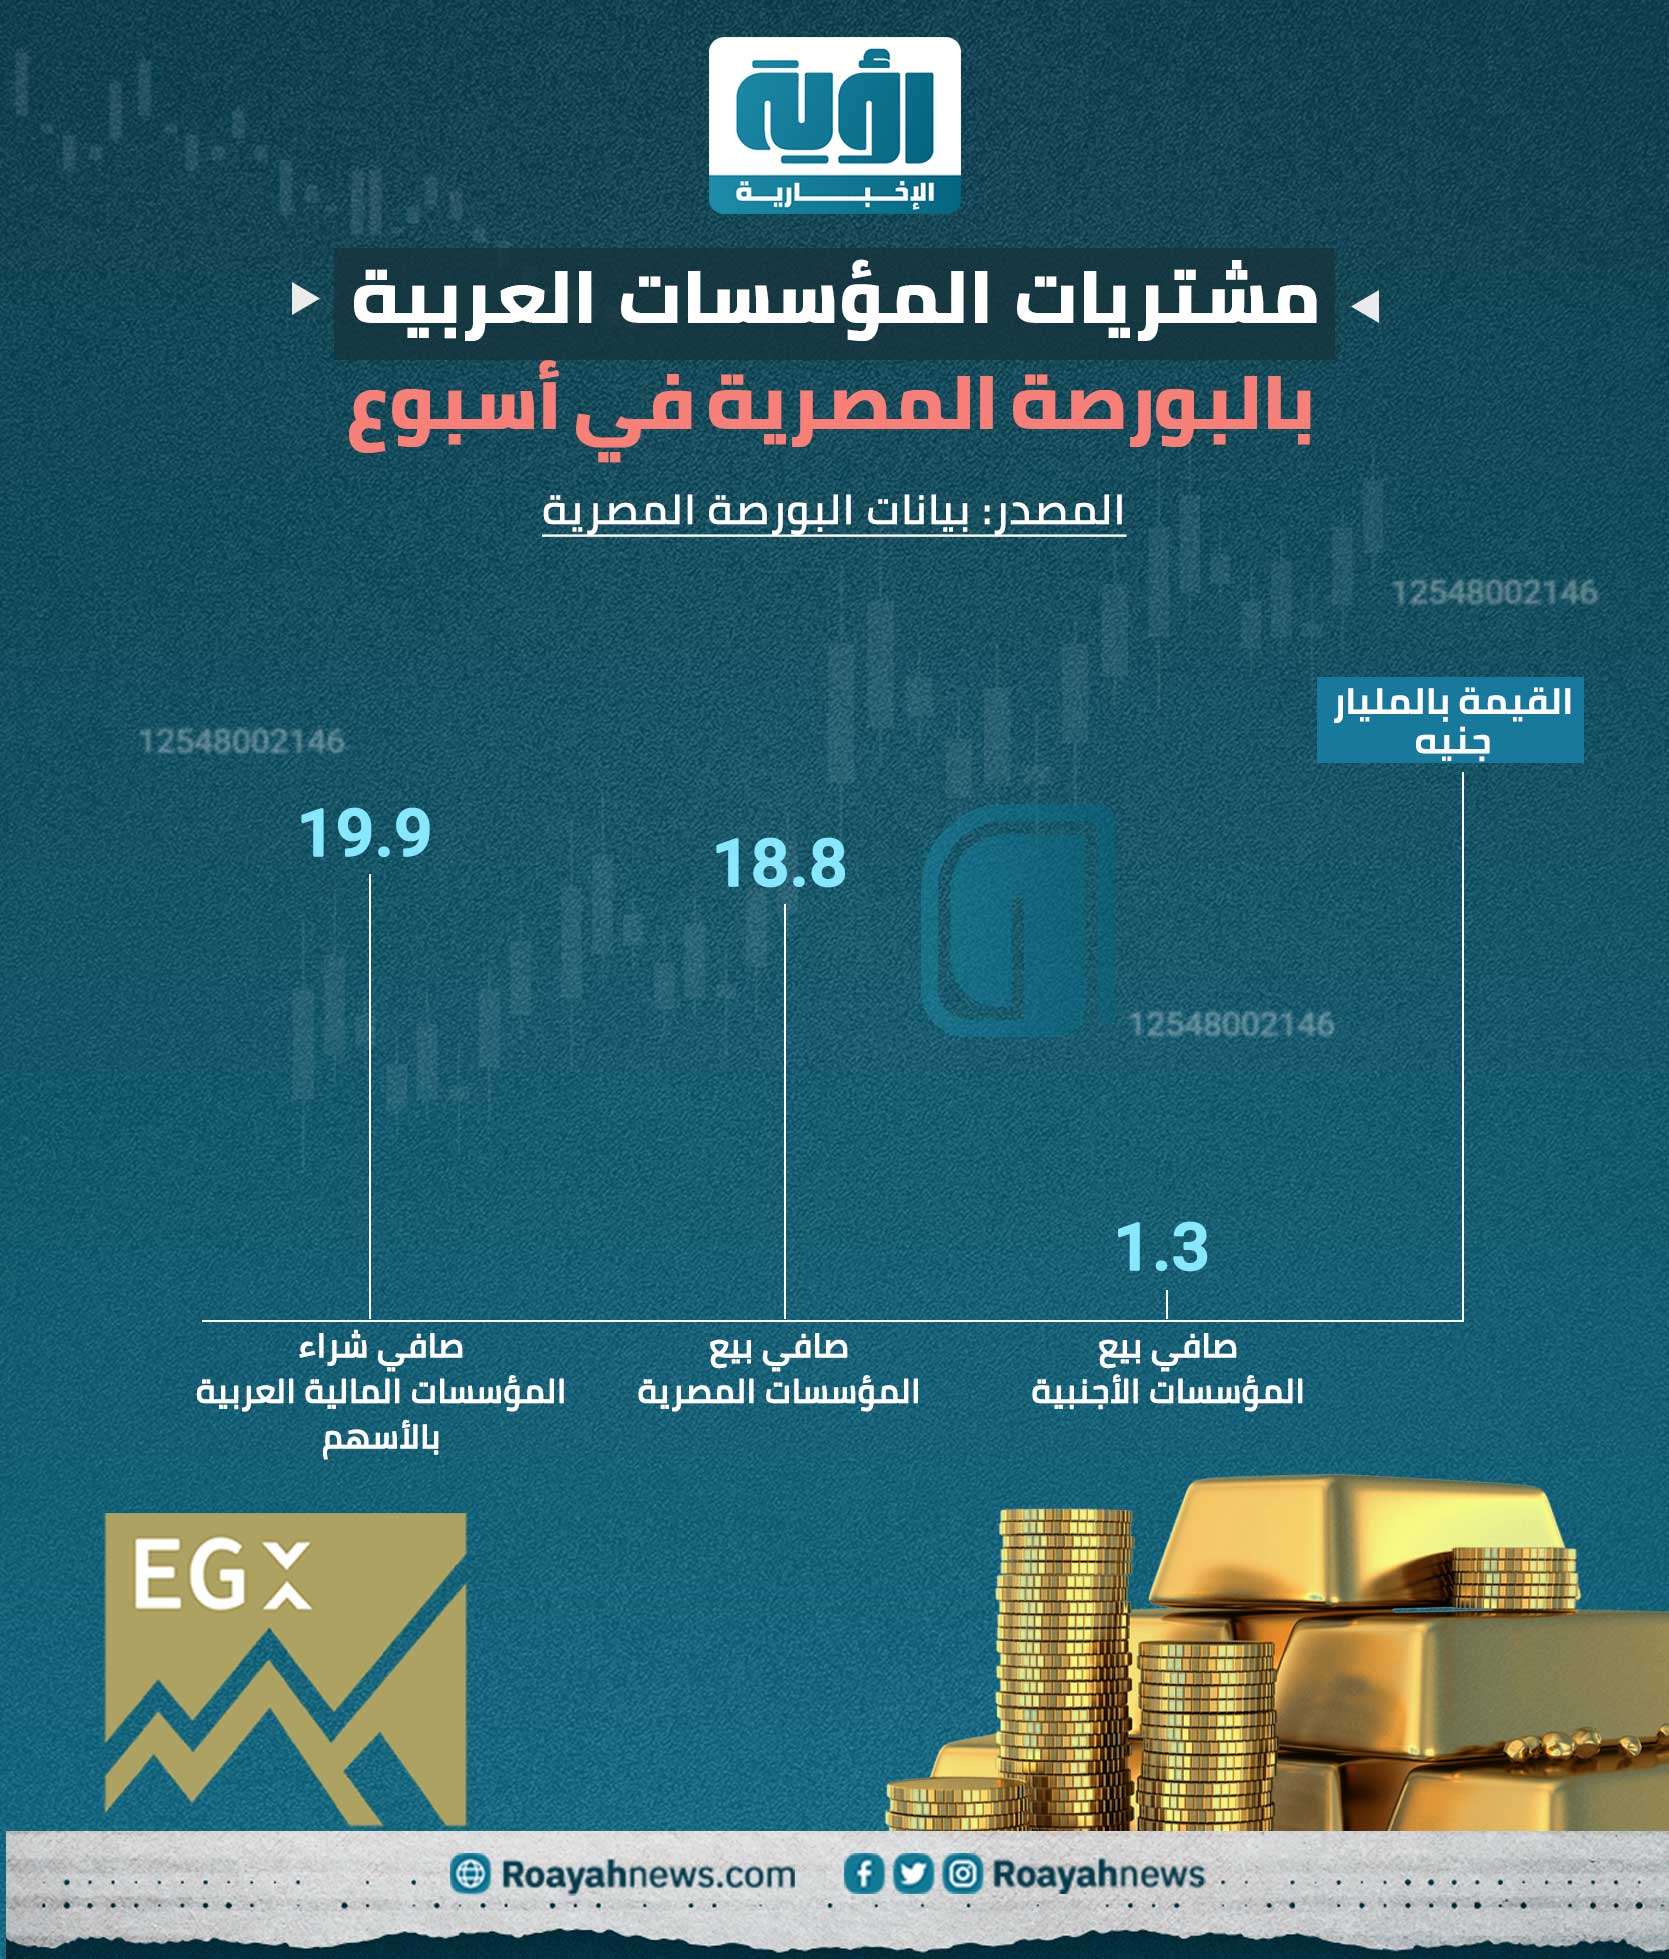 مشتريات المؤسسات العربية بالبورصة المصرية في أسبوع 1